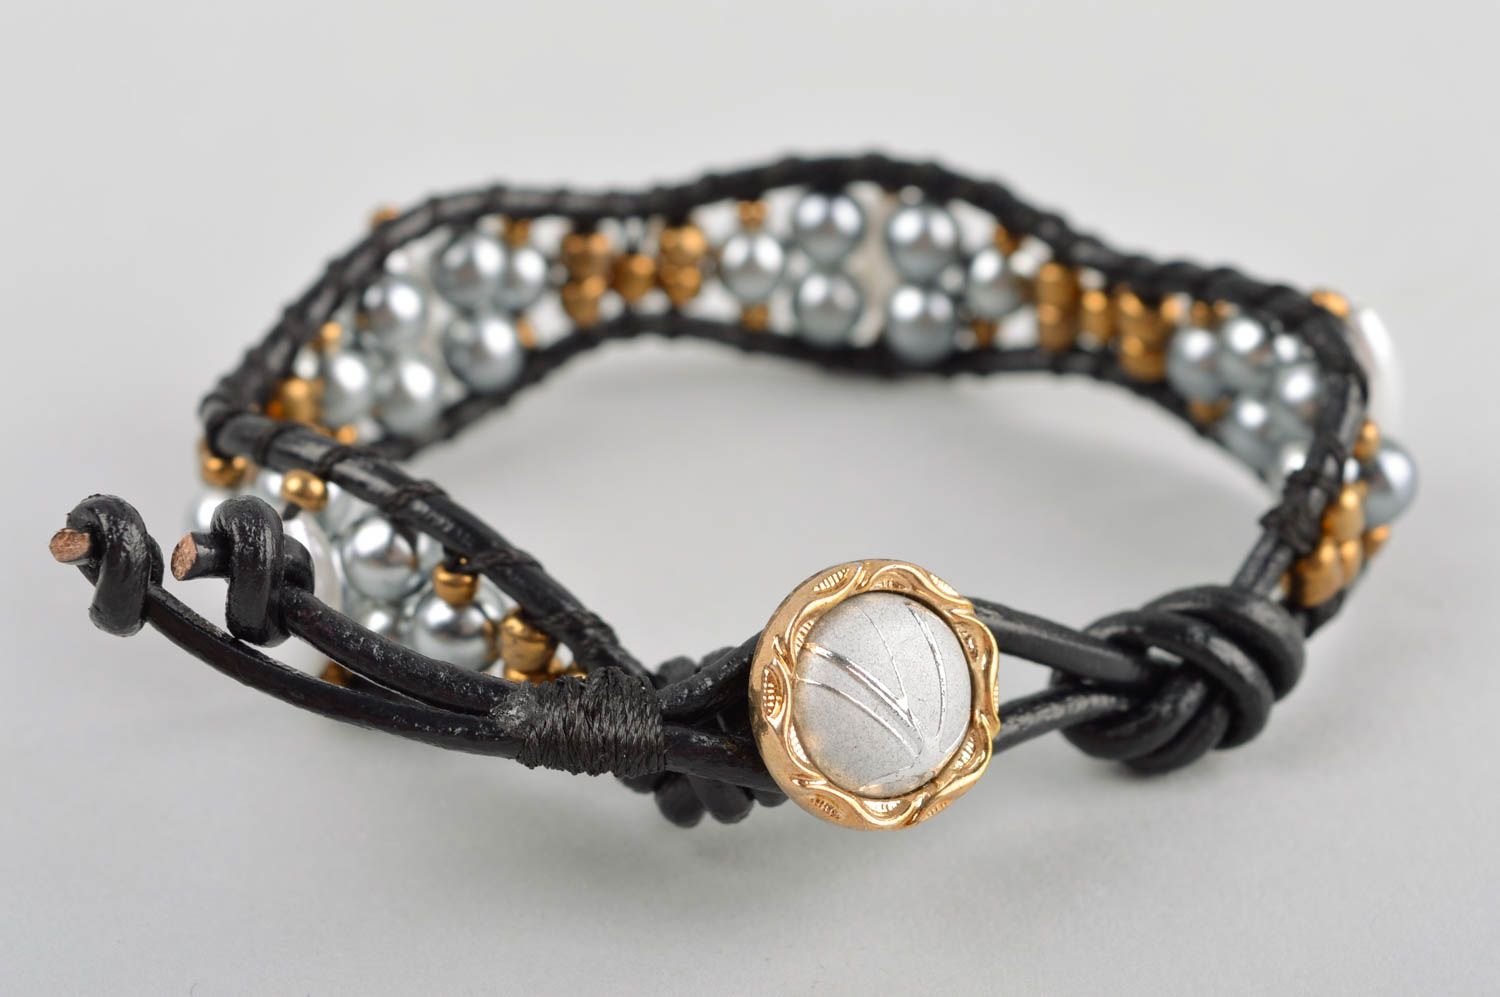 Handmade bracelet unusual bracelet for women gift ideas unusual gift for girls photo 3